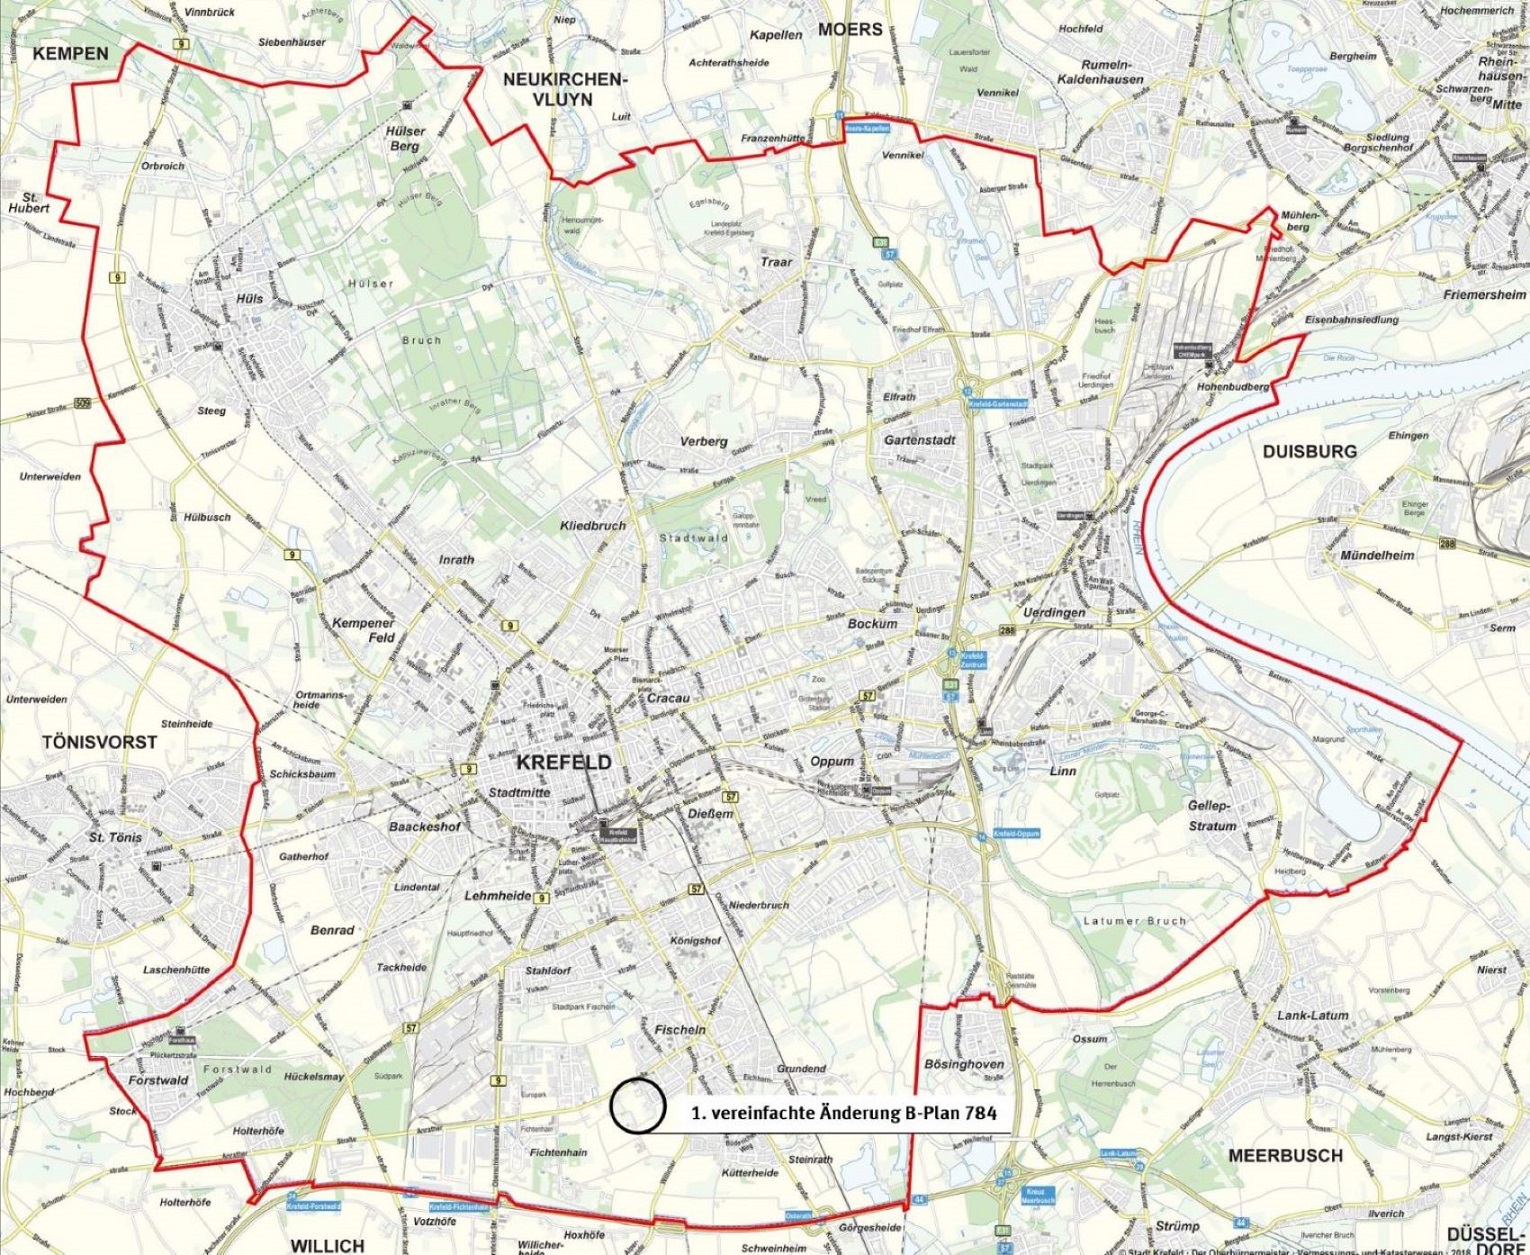 1. vereinfachte Änderung des Bebauungsplanes 784 in der Stadtkarte